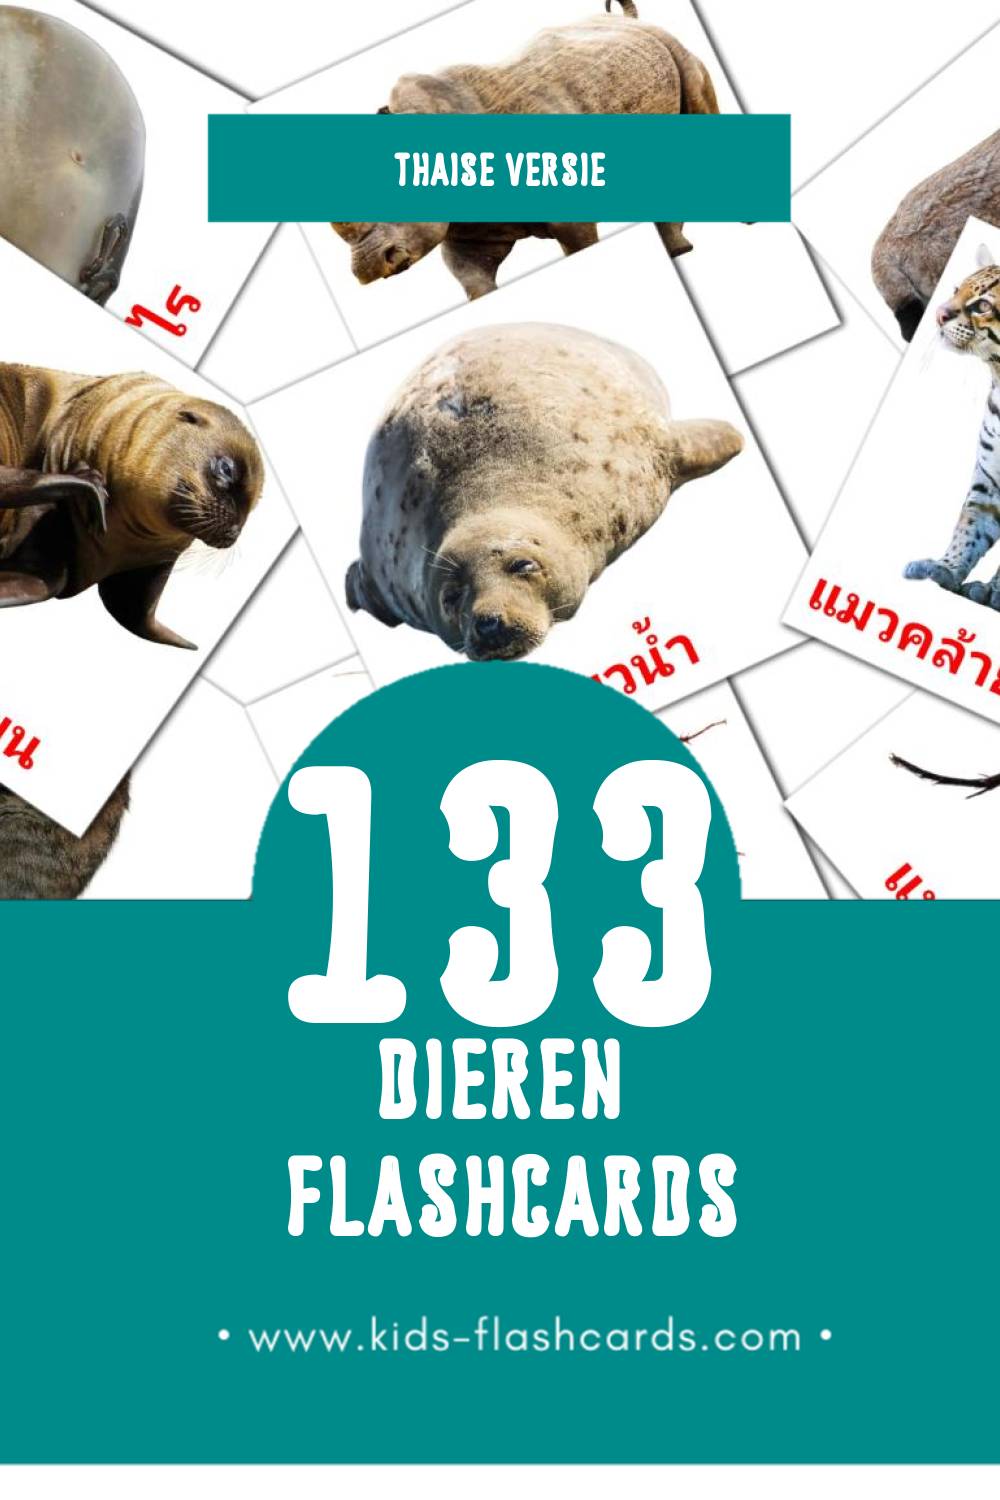 Visuele สัตว์โลก Flashcards voor Kleuters (133 kaarten in het Thais)